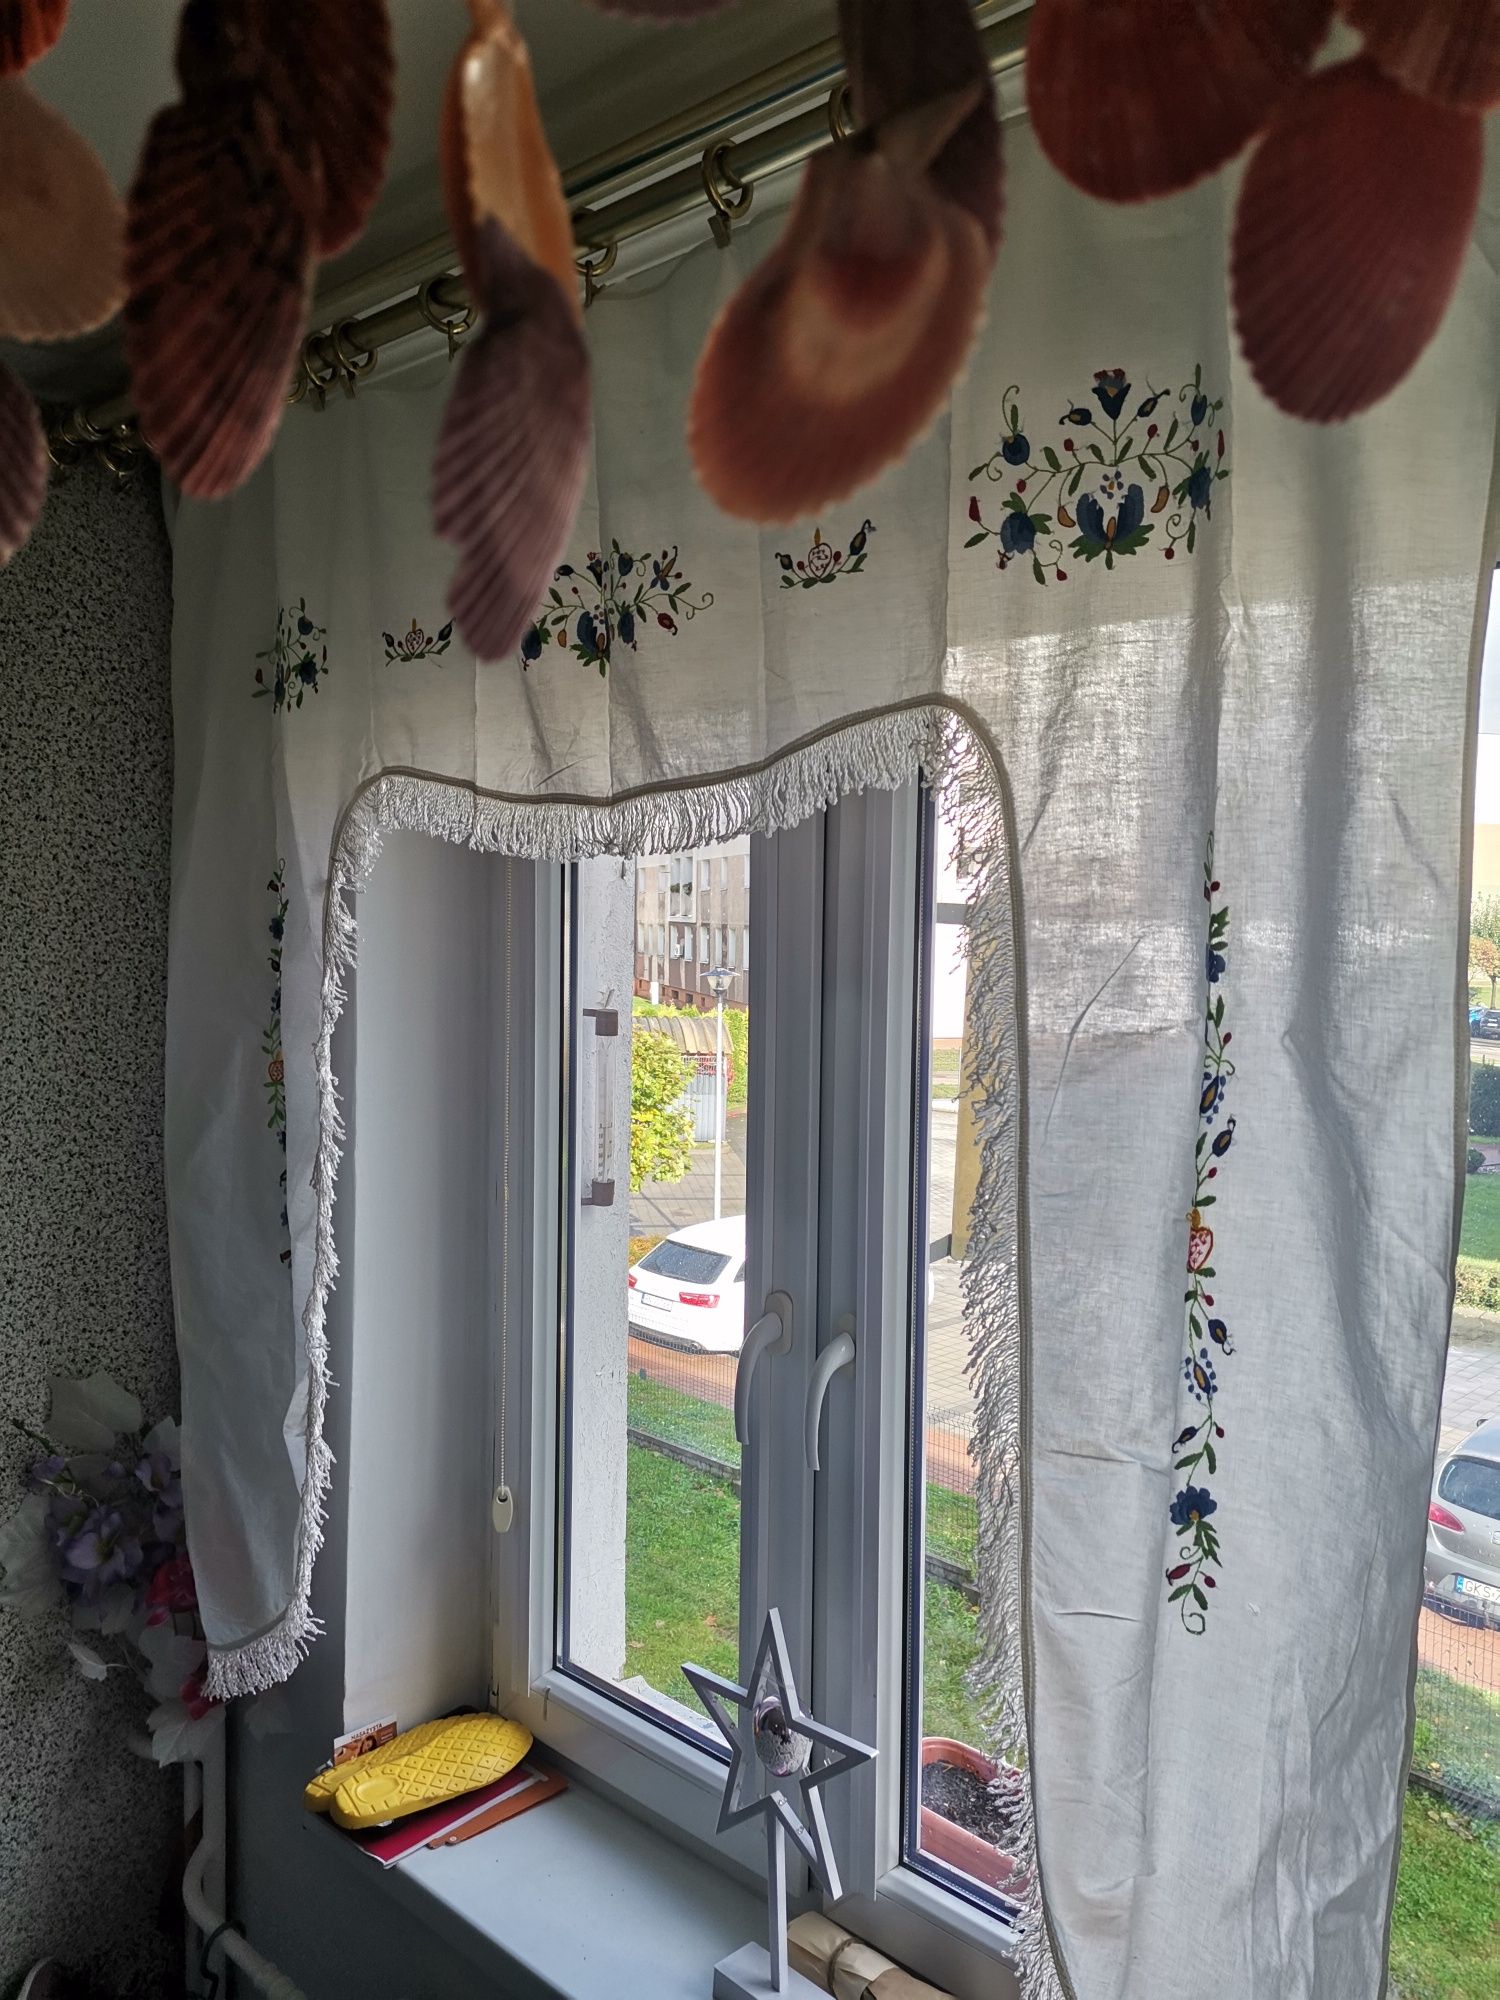 Kaszubska zawieszka NAD DRZWI/Na okno